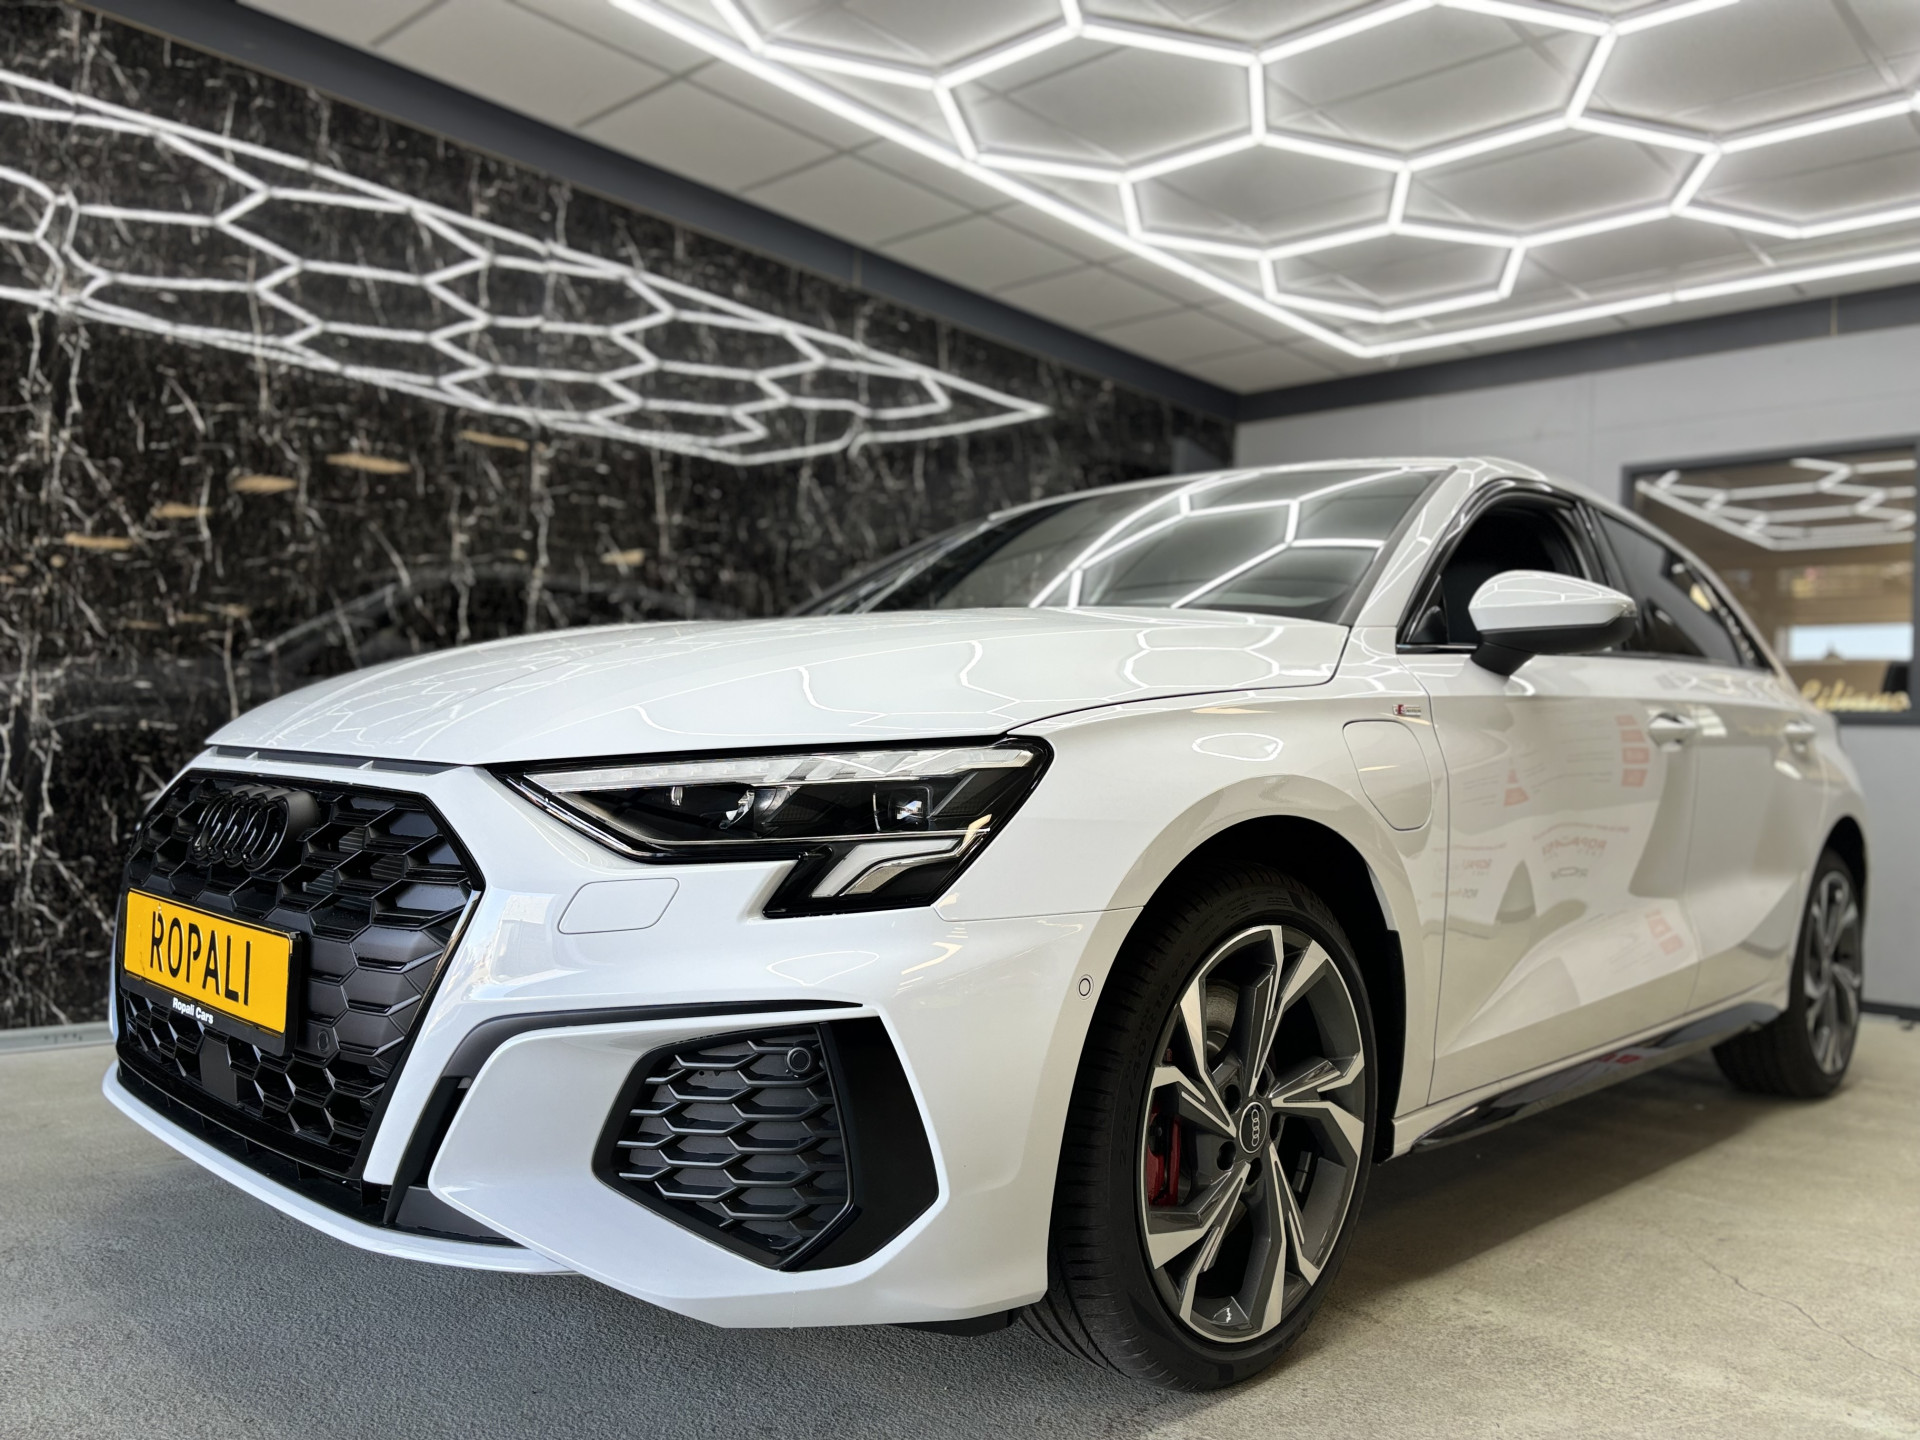 Audi Audi | Ropali Cars Raamsdonksveer